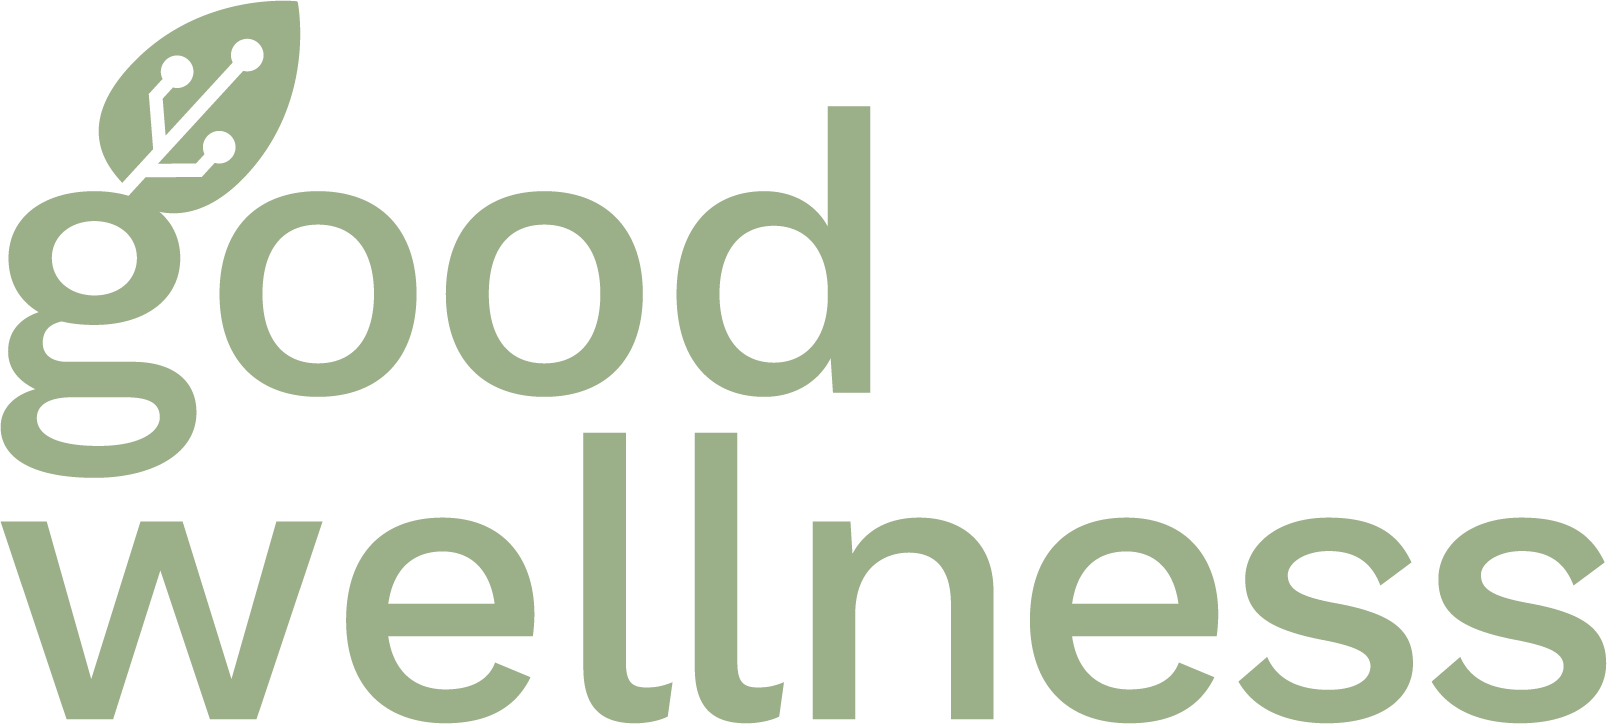 Goodwellness-logo-green